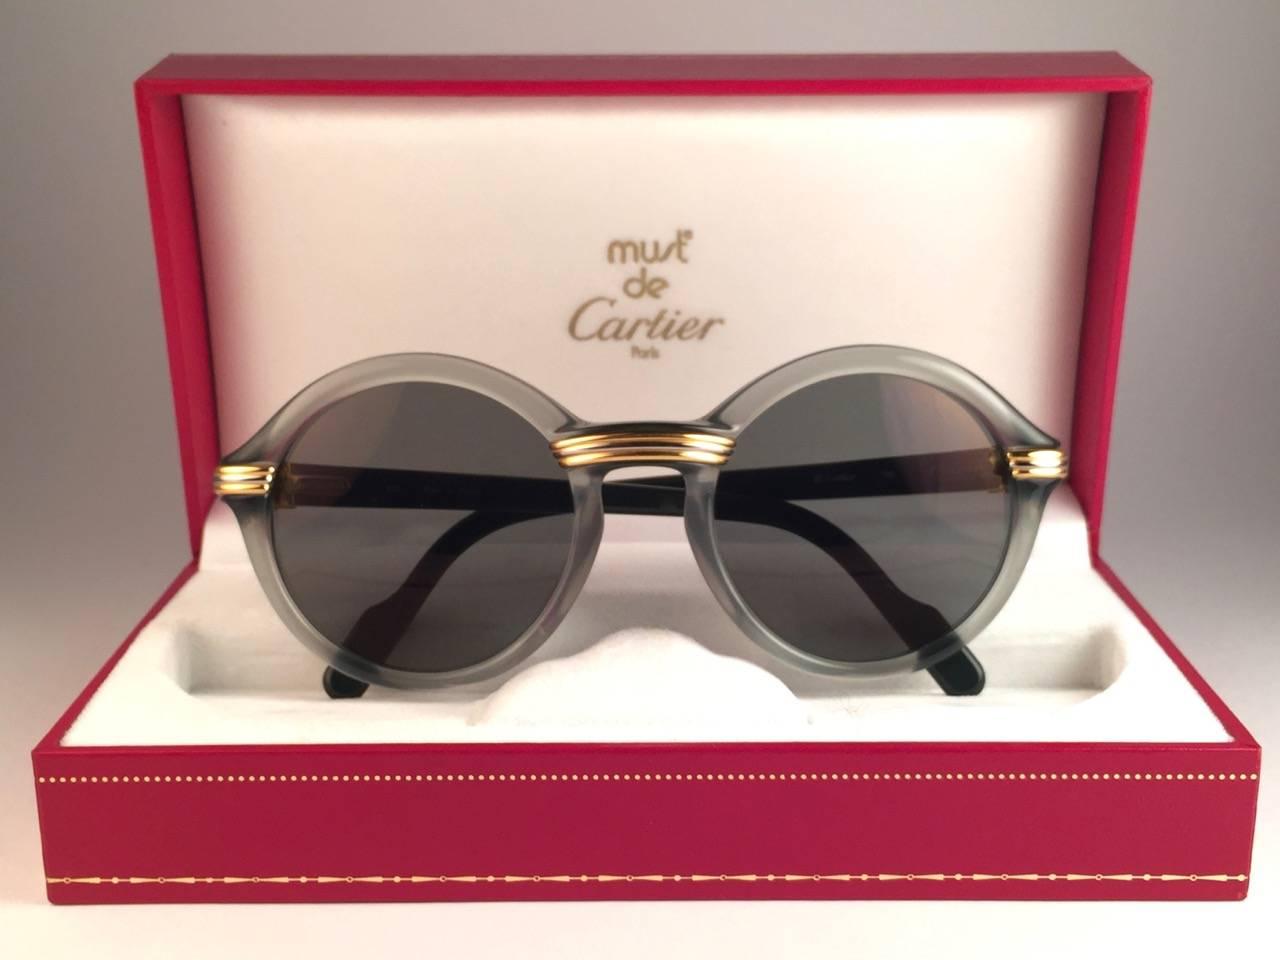 New 1991 Original Cartier Cabriolet Art Deco Translucent Jade sunglasses with grey ( uv protection ) lenses.
Le cadre présente les célèbres accents d'or véritable et d'or blanc au centre et sur les côtés. 
Tous les poinçons. Signes en or de Cartier